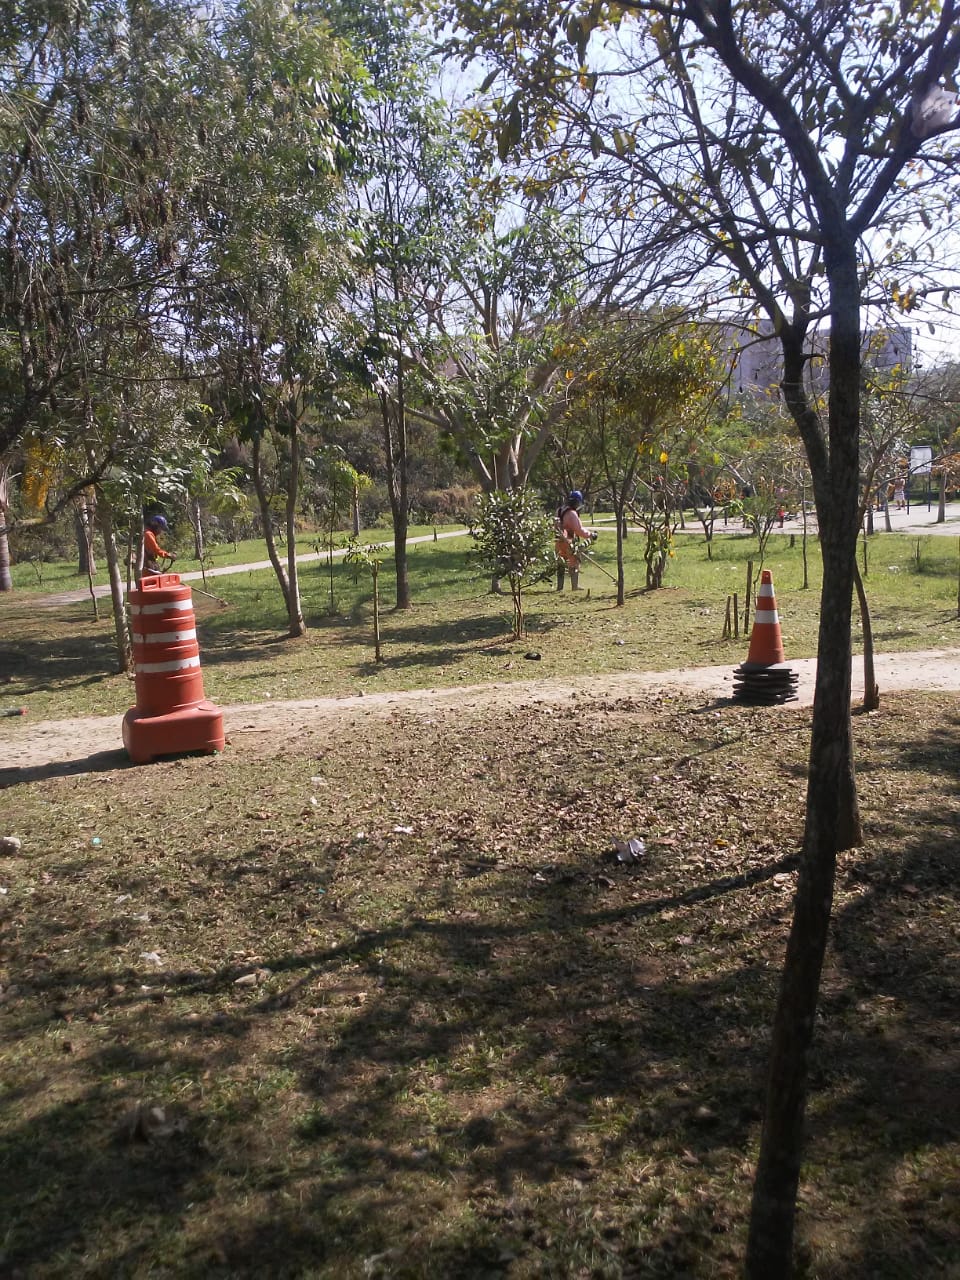 Dois cones laranja com listras brancas marcam local onde funcionários da Prefeitura roçam a grama, numa praça com diversas árvores de médio porte